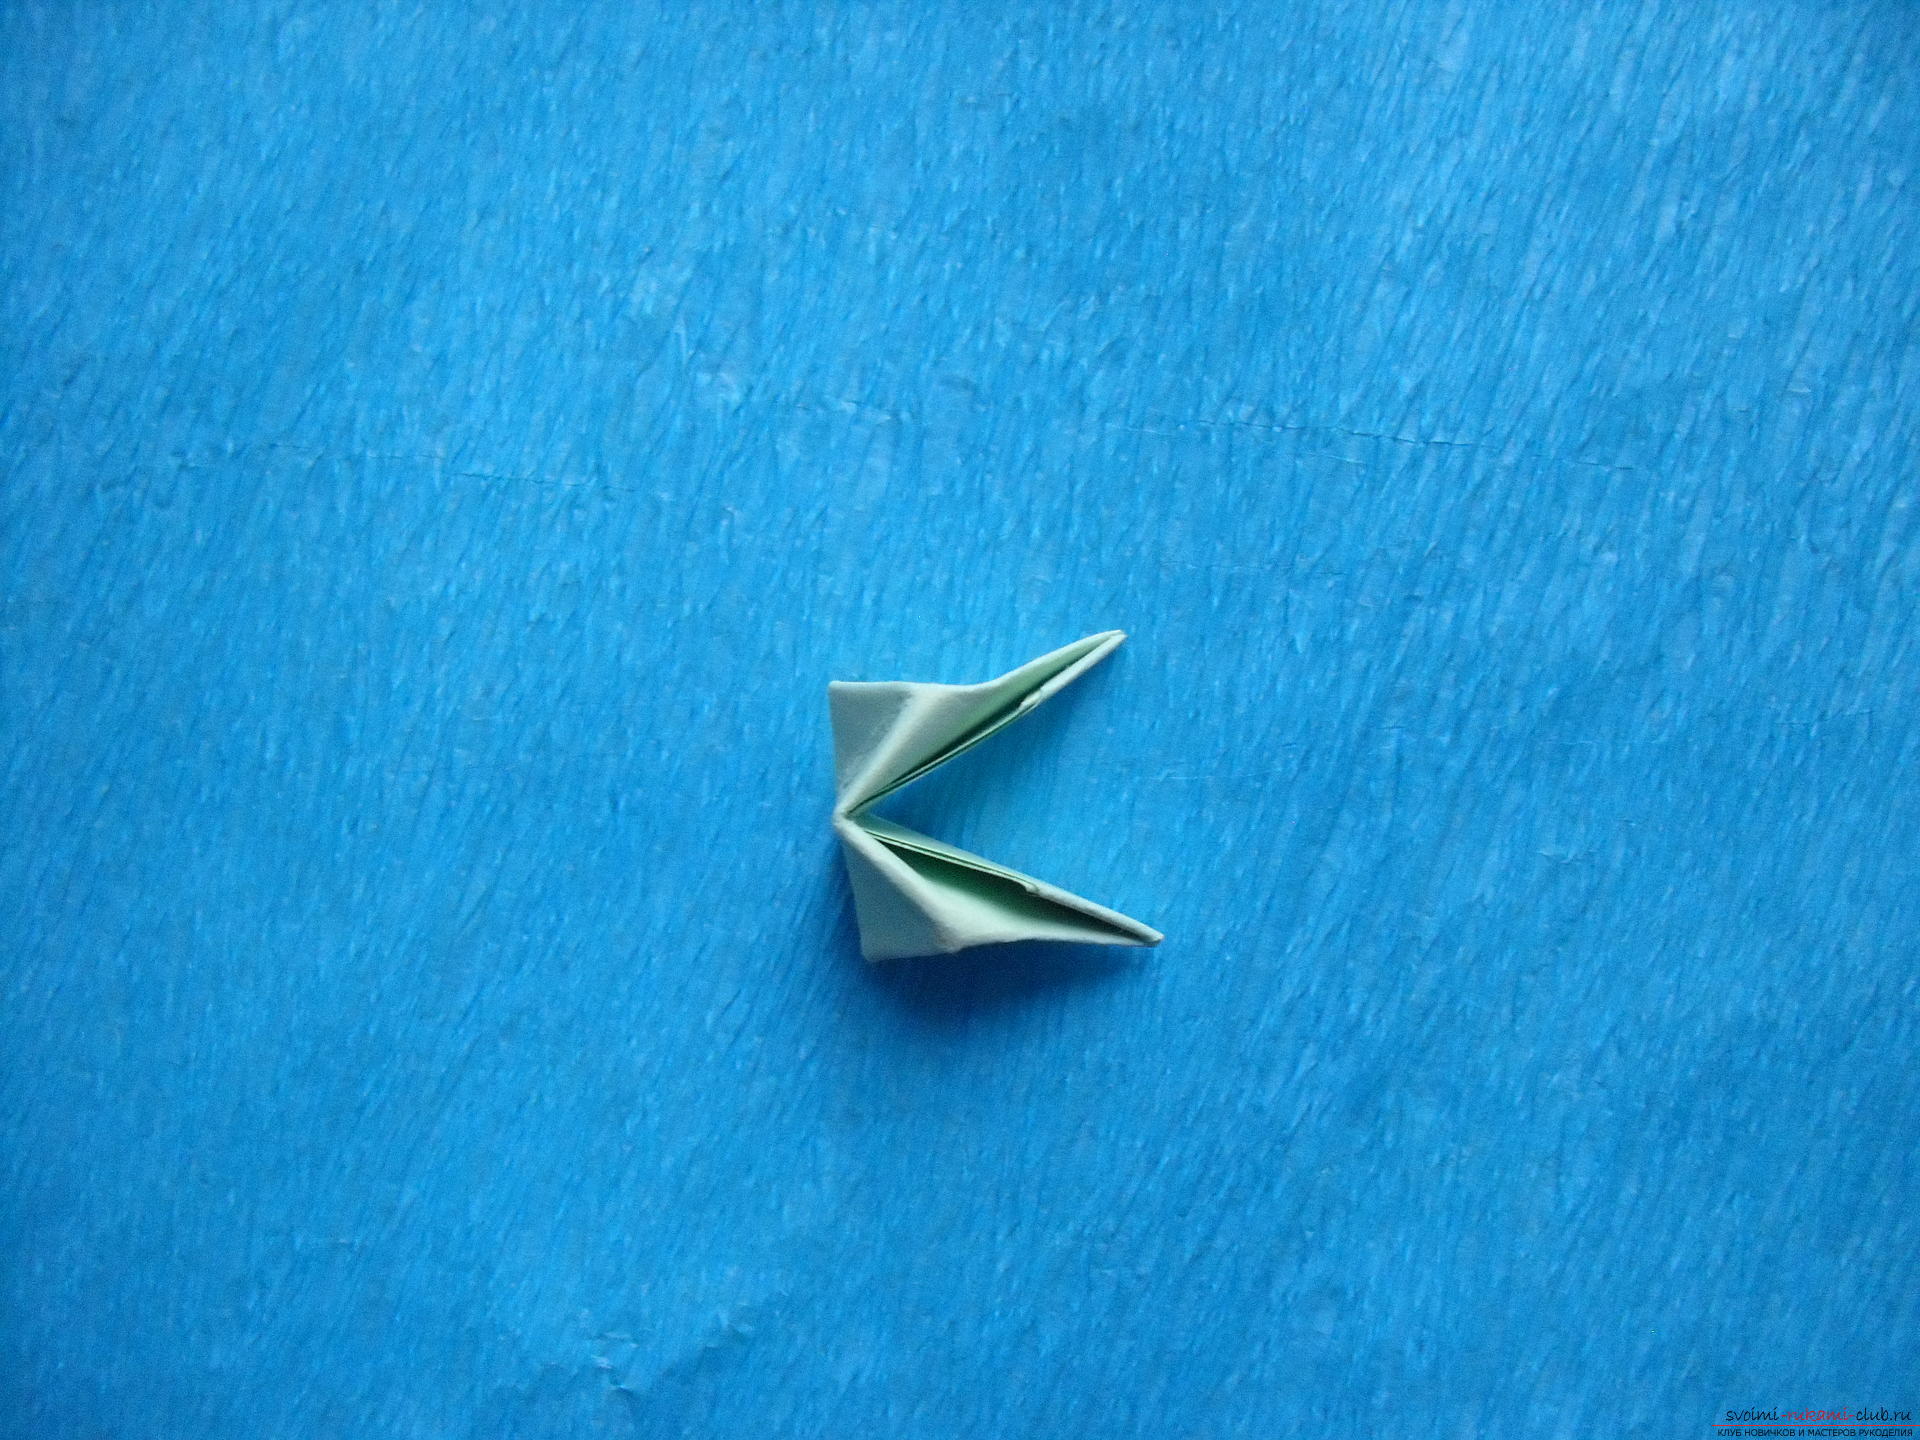 Этот мастер-класс расскажет как сделать поделку из модульных оригами - лягушку.. Фото №19